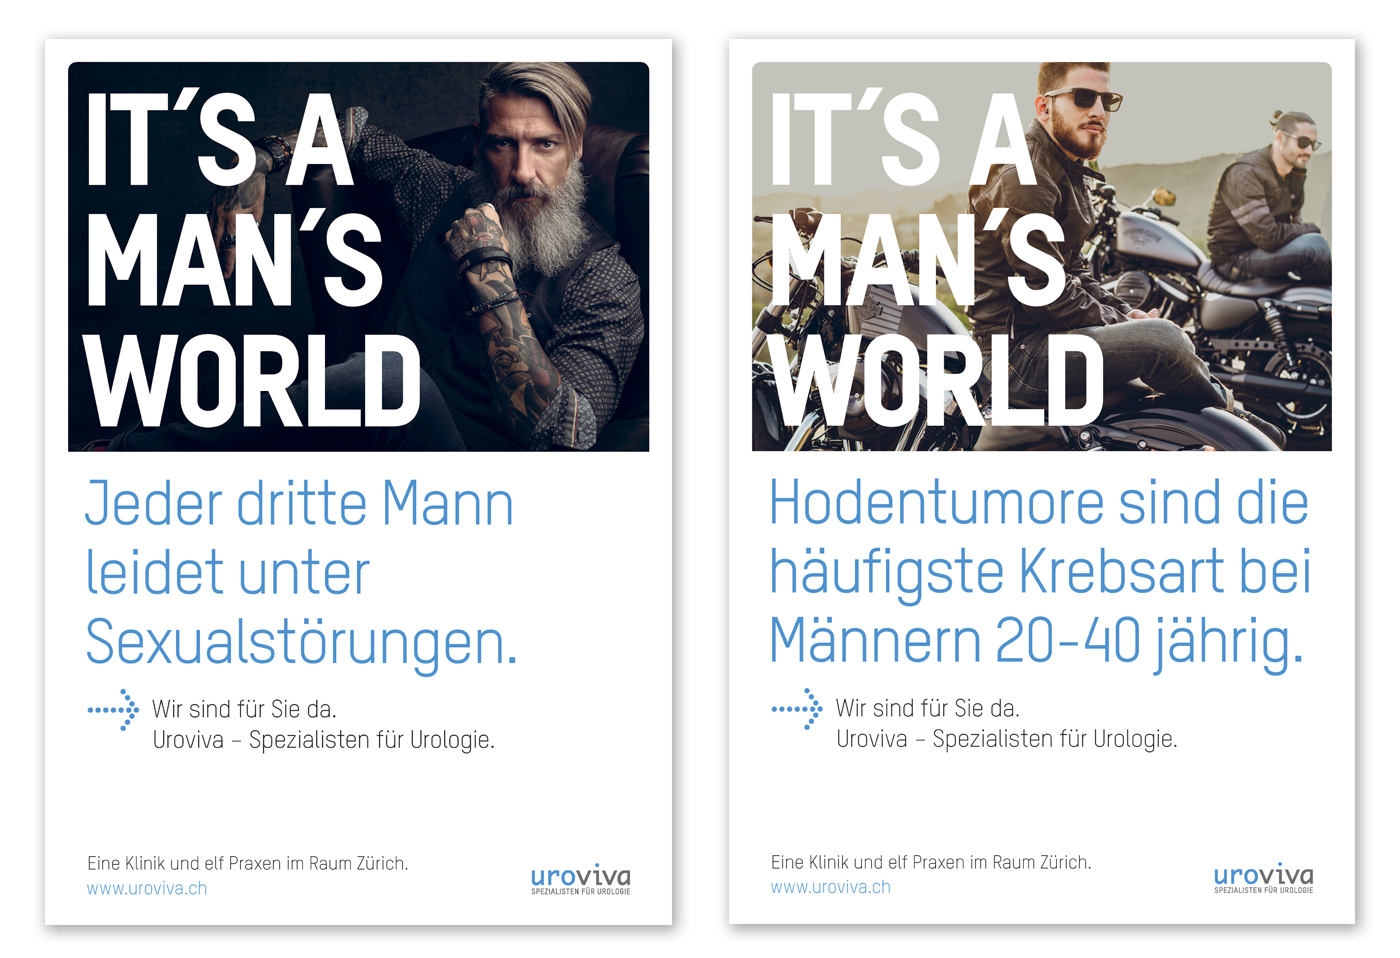 Plakate für Uroviva an der Man's World Ausstellung